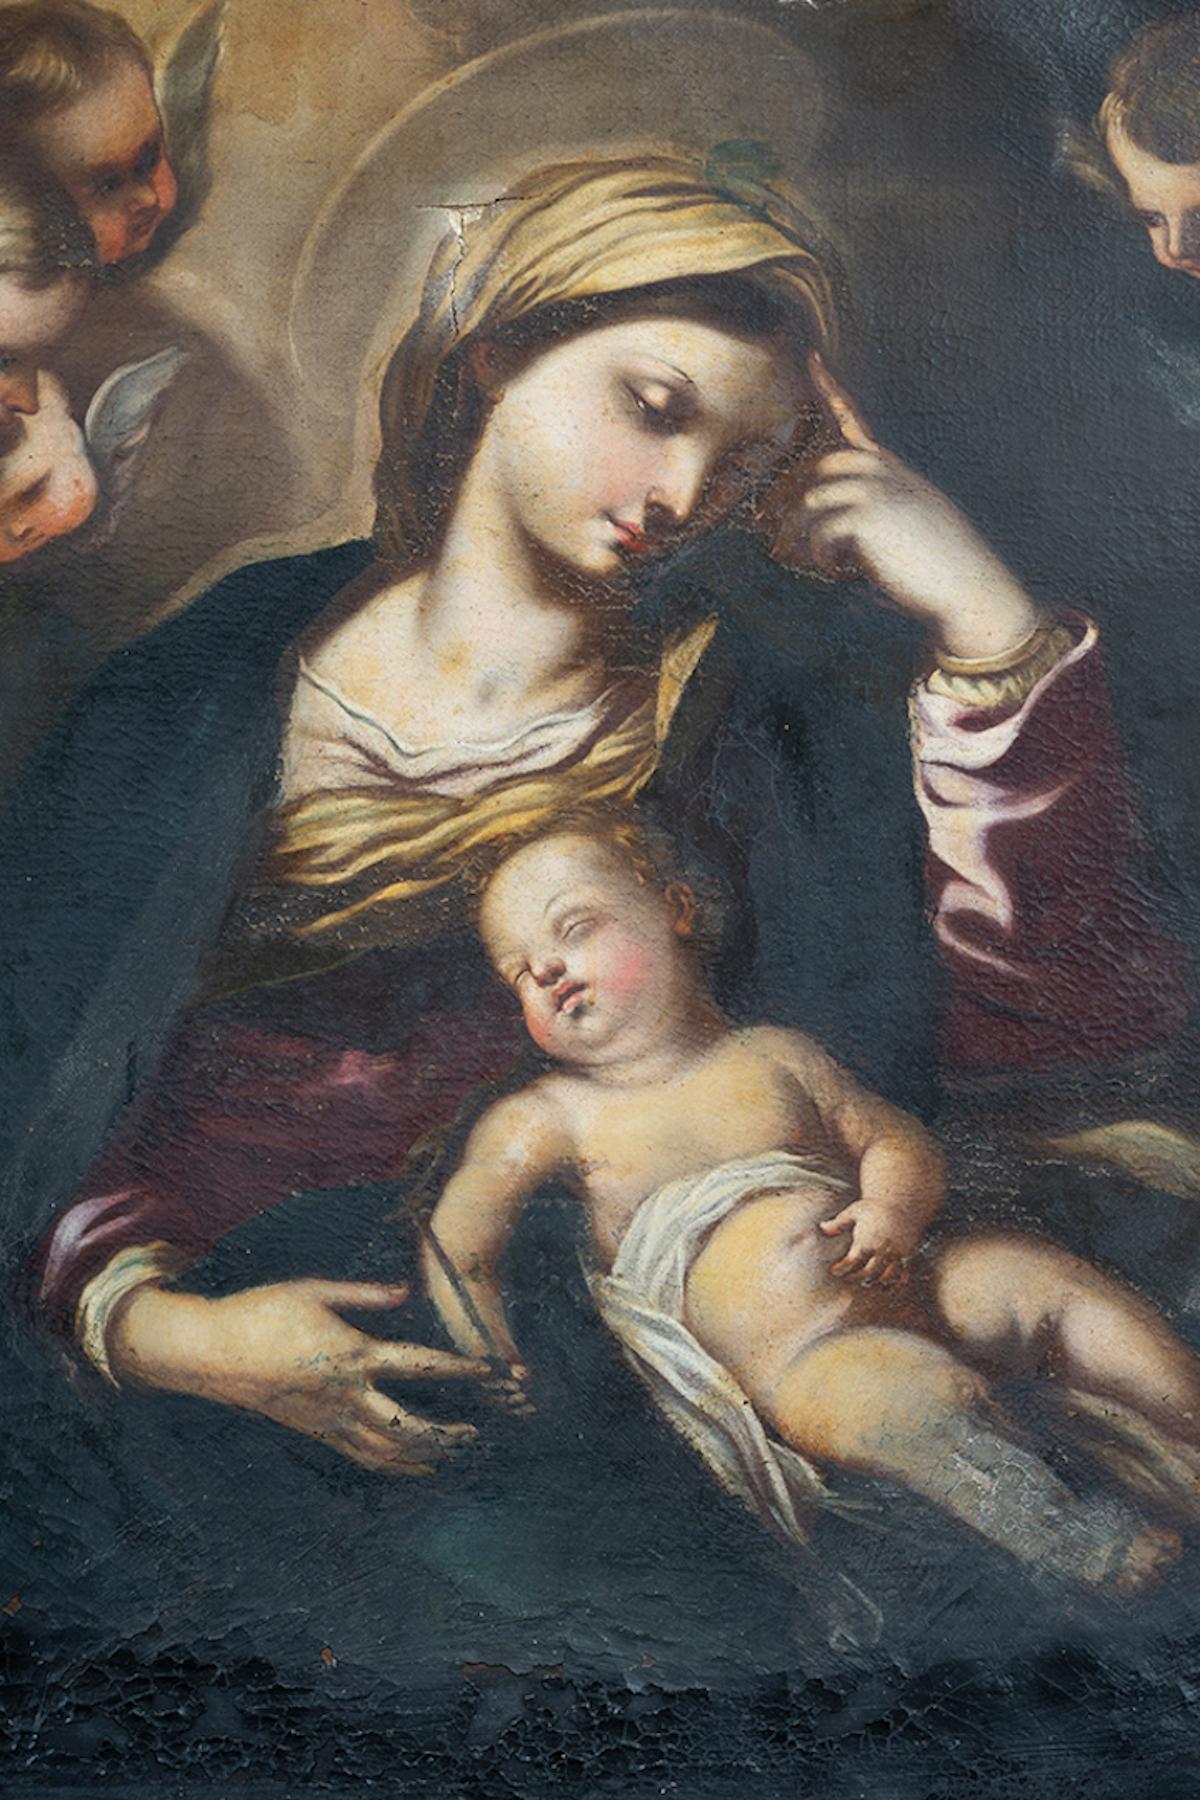 Dipinto antico olio su tela raffigurante Madonna col Bambino. - Painting by Unknown